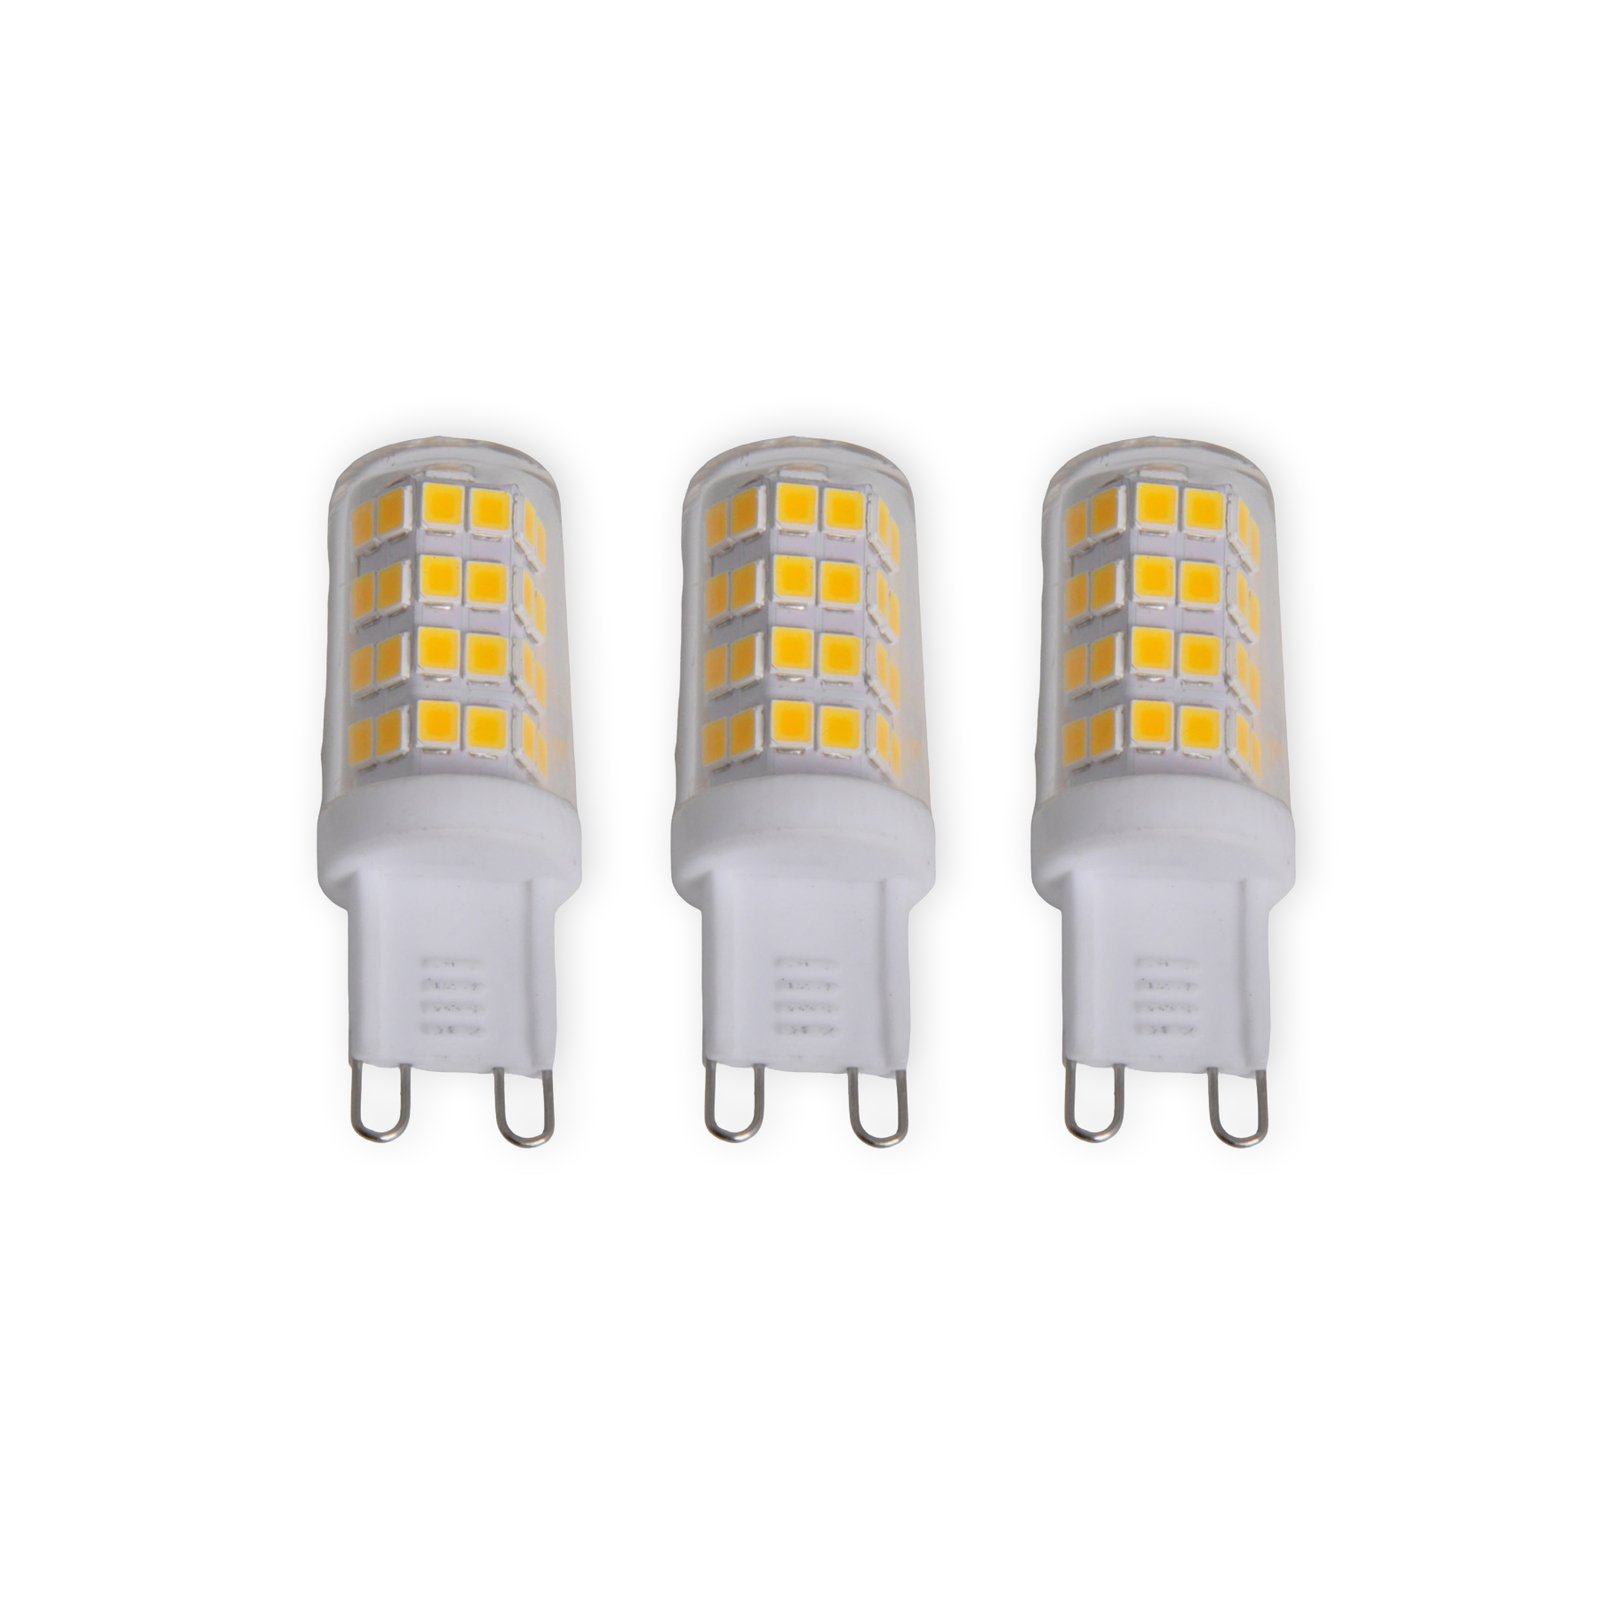 Bi-pin LED bulb G9 3 W, warm white, 330 lm, 3-pack